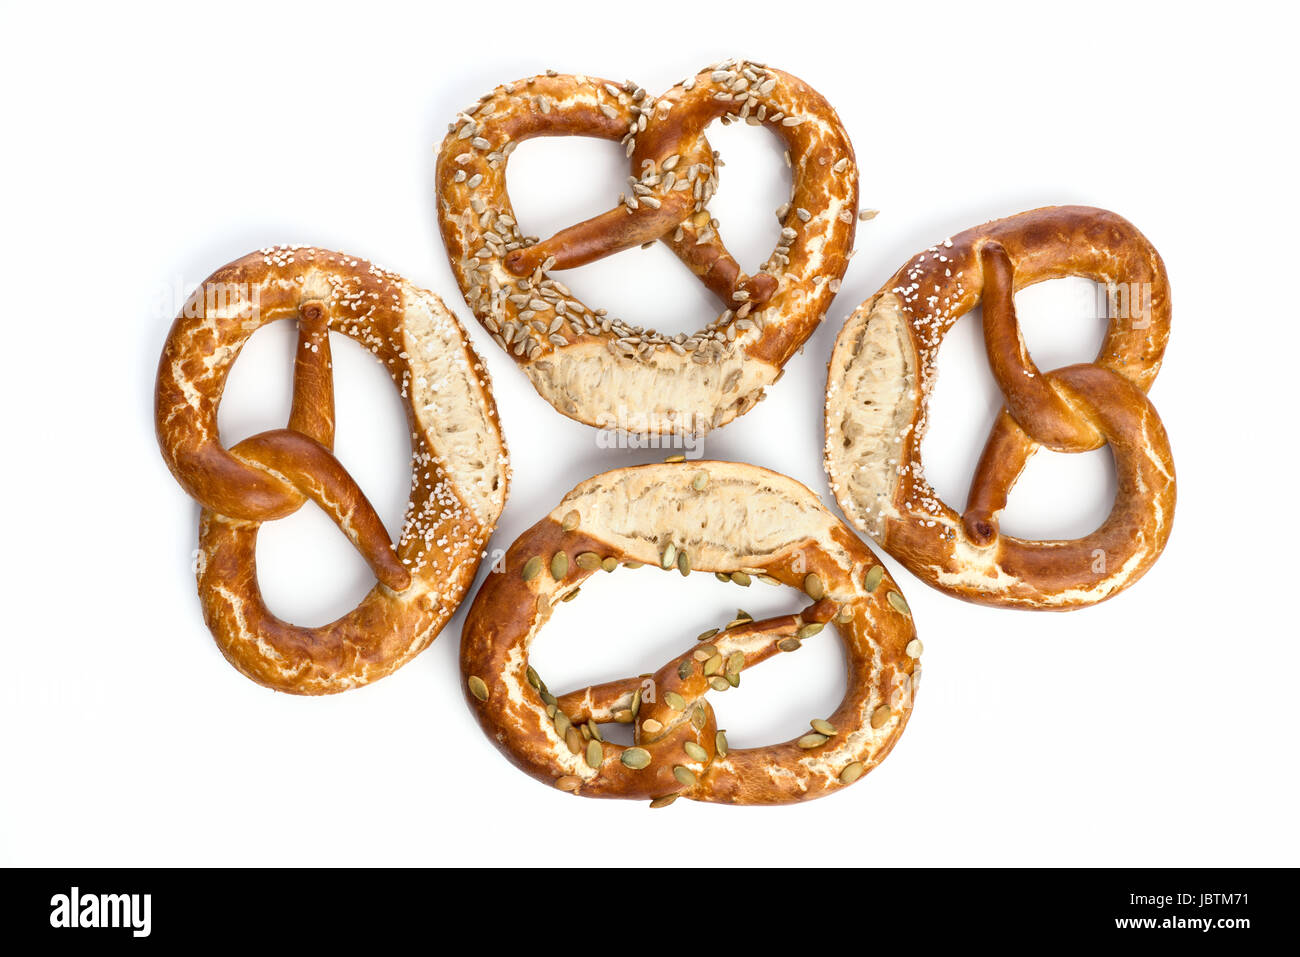 Lye pretzels Stock Photo